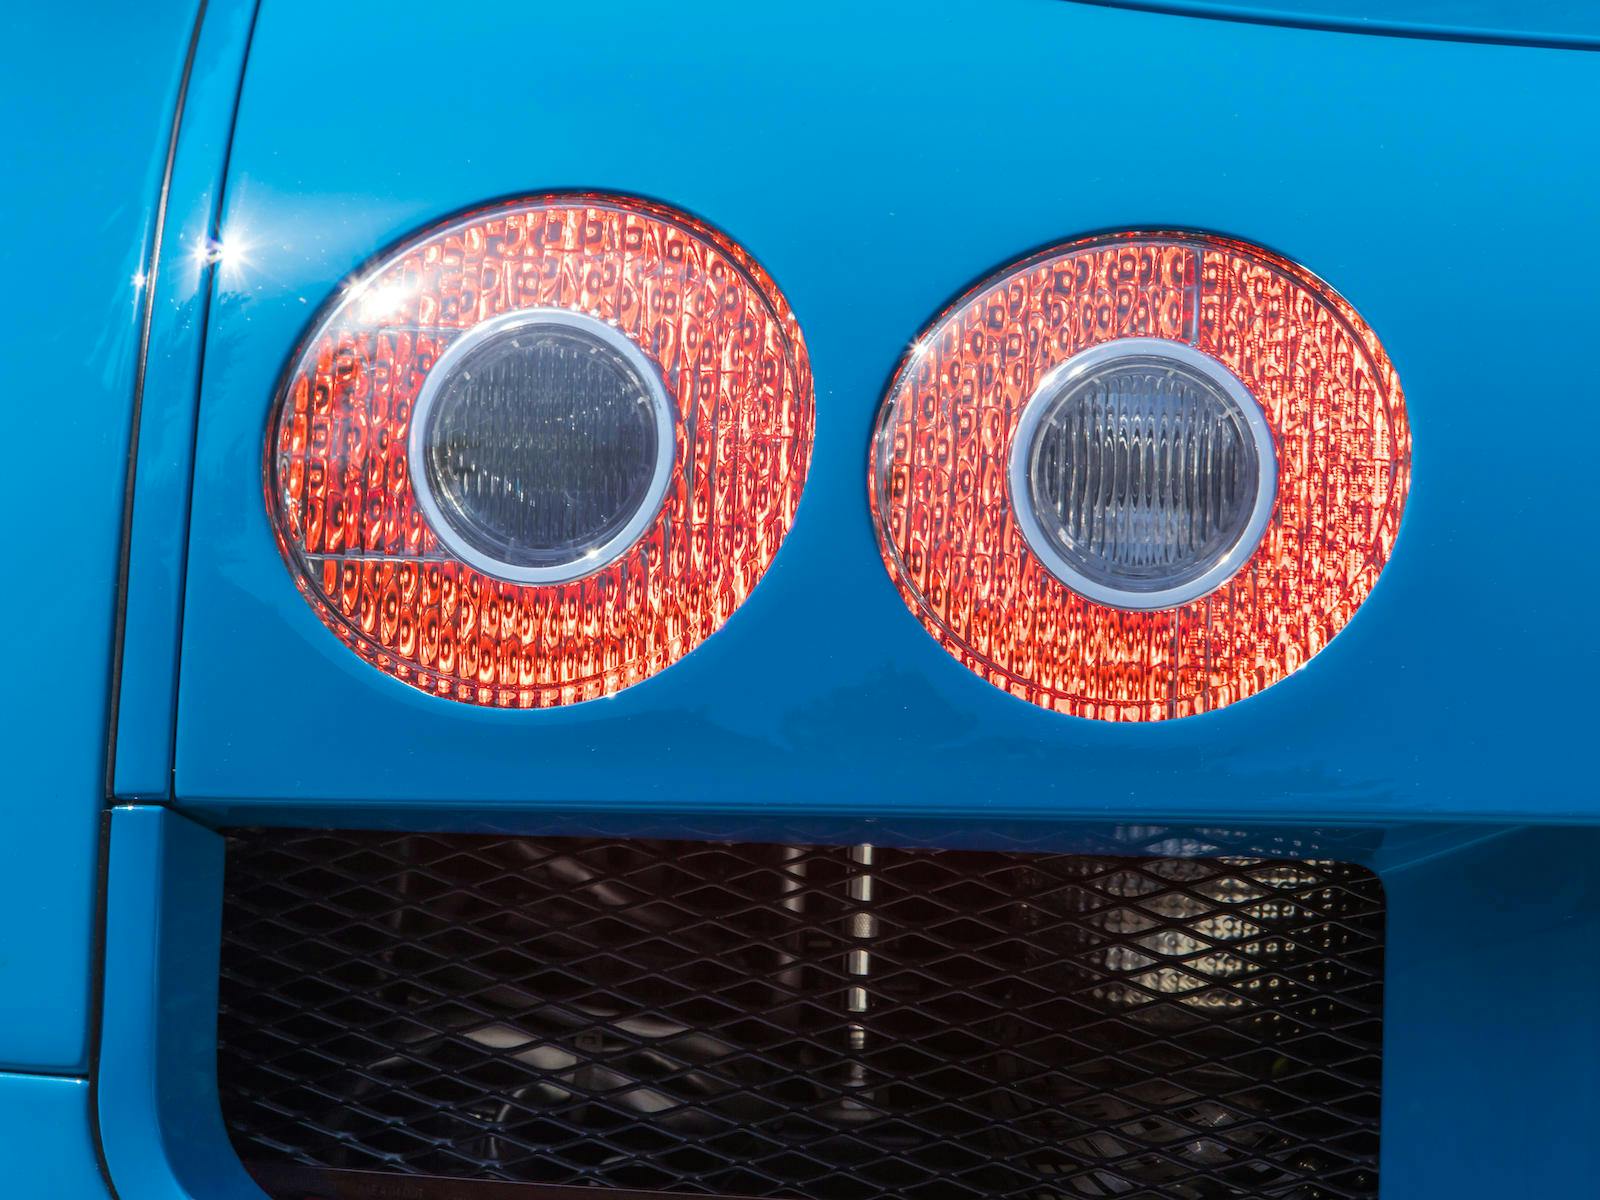 Bugatti Veyron taillight